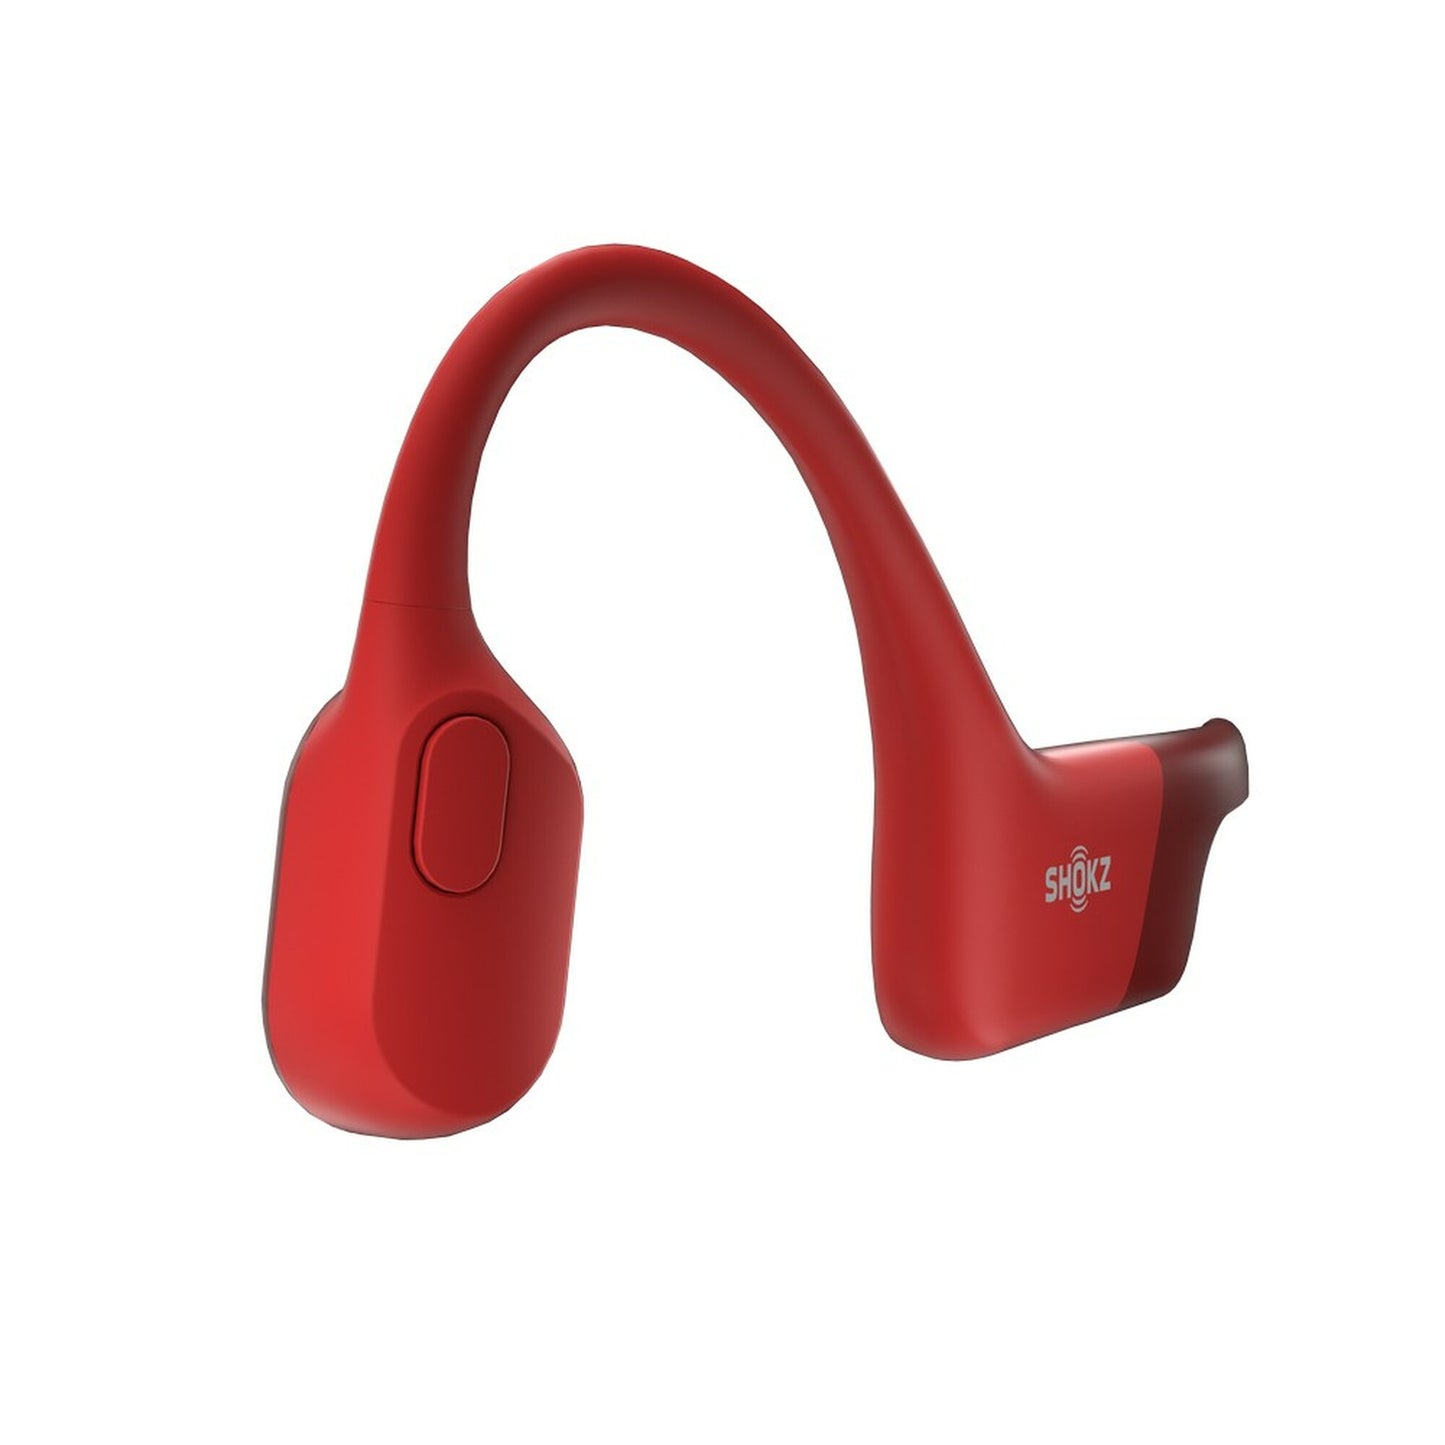 Shokz OpenRun Bone Conduction Open-Ear Bluetooth Headphones (Red)